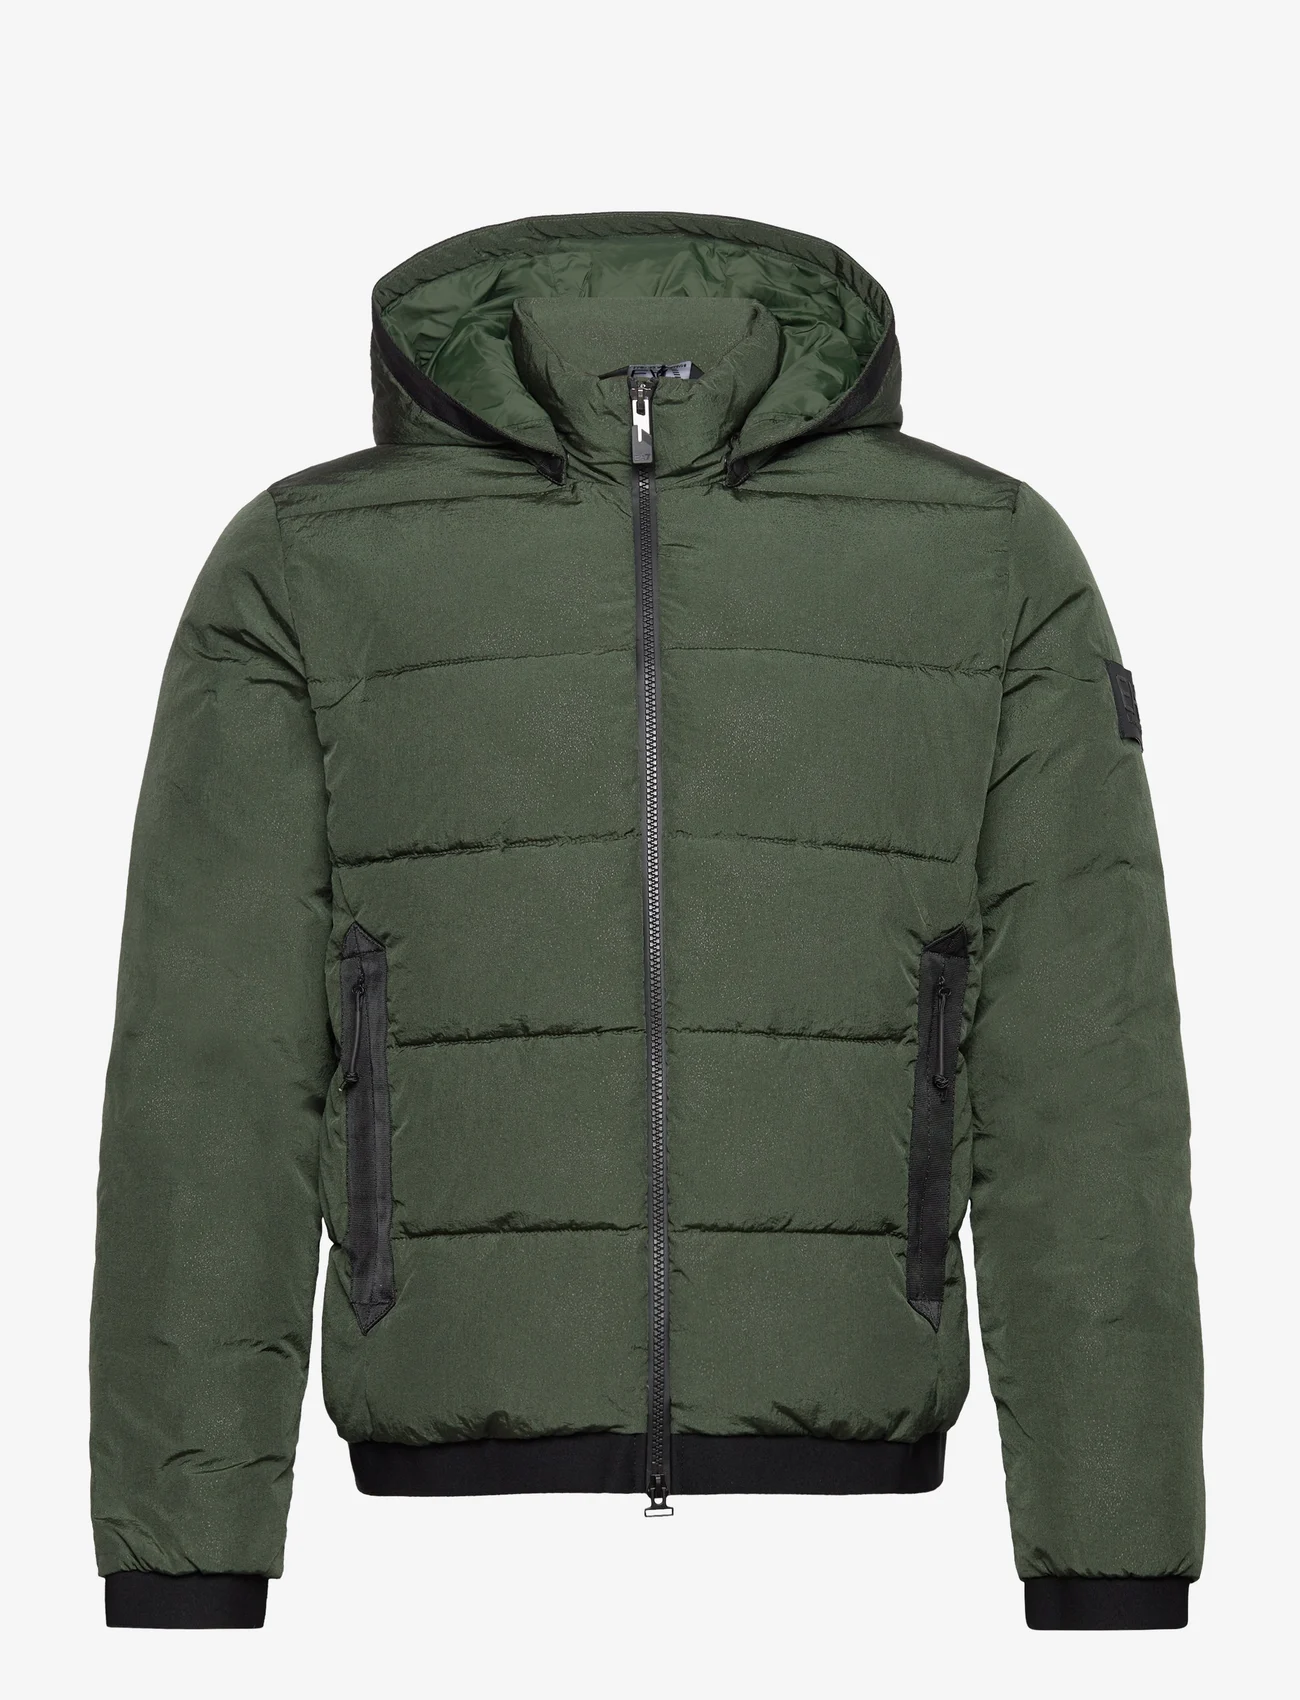 EA7 - OUTERWEAR - winter jackets - 1845-duffel bag - 0